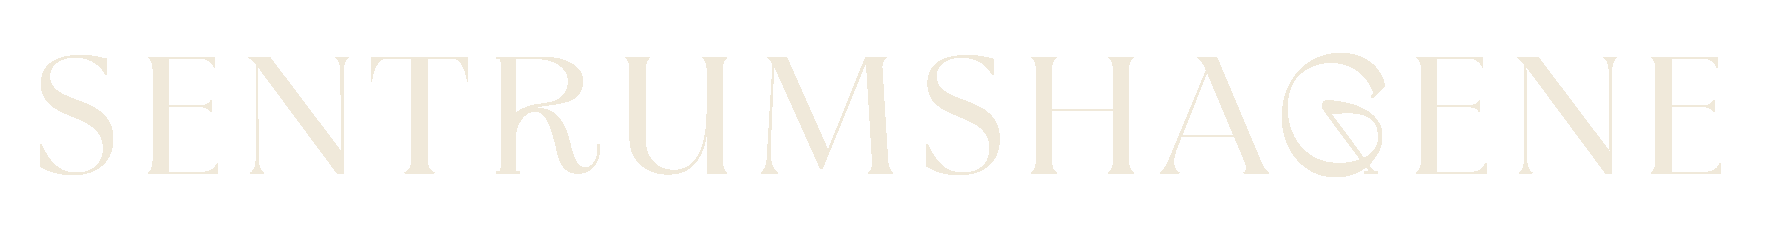 Logoen for Sentrumshagene.